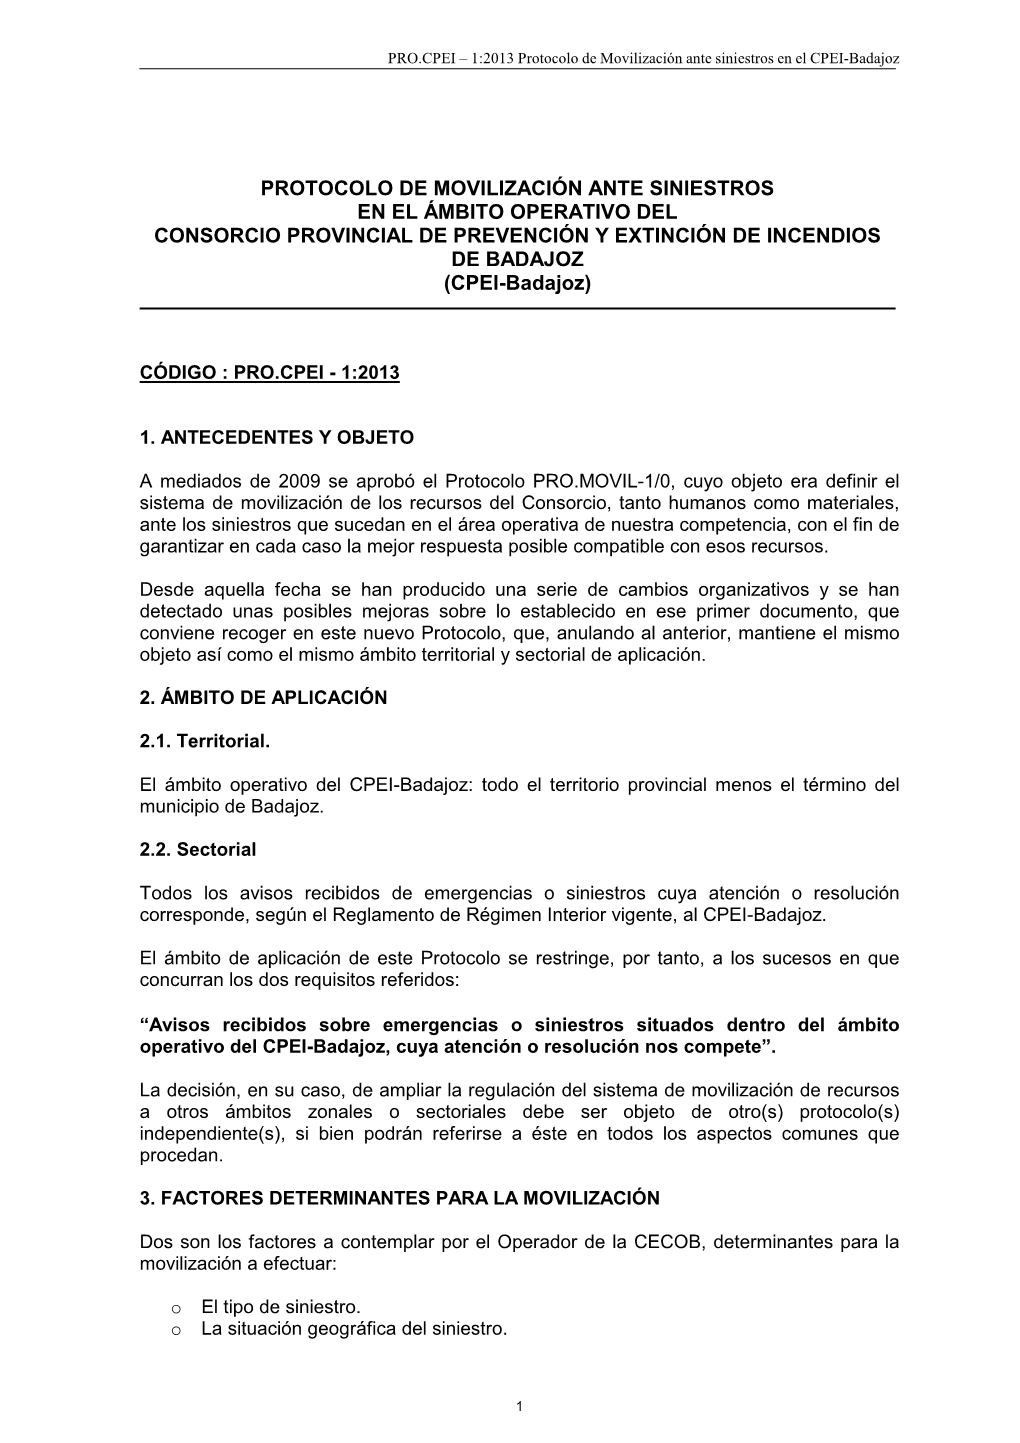 PROTOCOLO DE MOVILIZACIÓN ANTE SINIESTROS EN EL ÁMBITO OPERATIVO DEL CONSORCIO PROVINCIAL DE PREVENCIÓN Y EXTINCIÓN DE INCENDIOS DE BADAJOZ (CPEI-Badajoz)